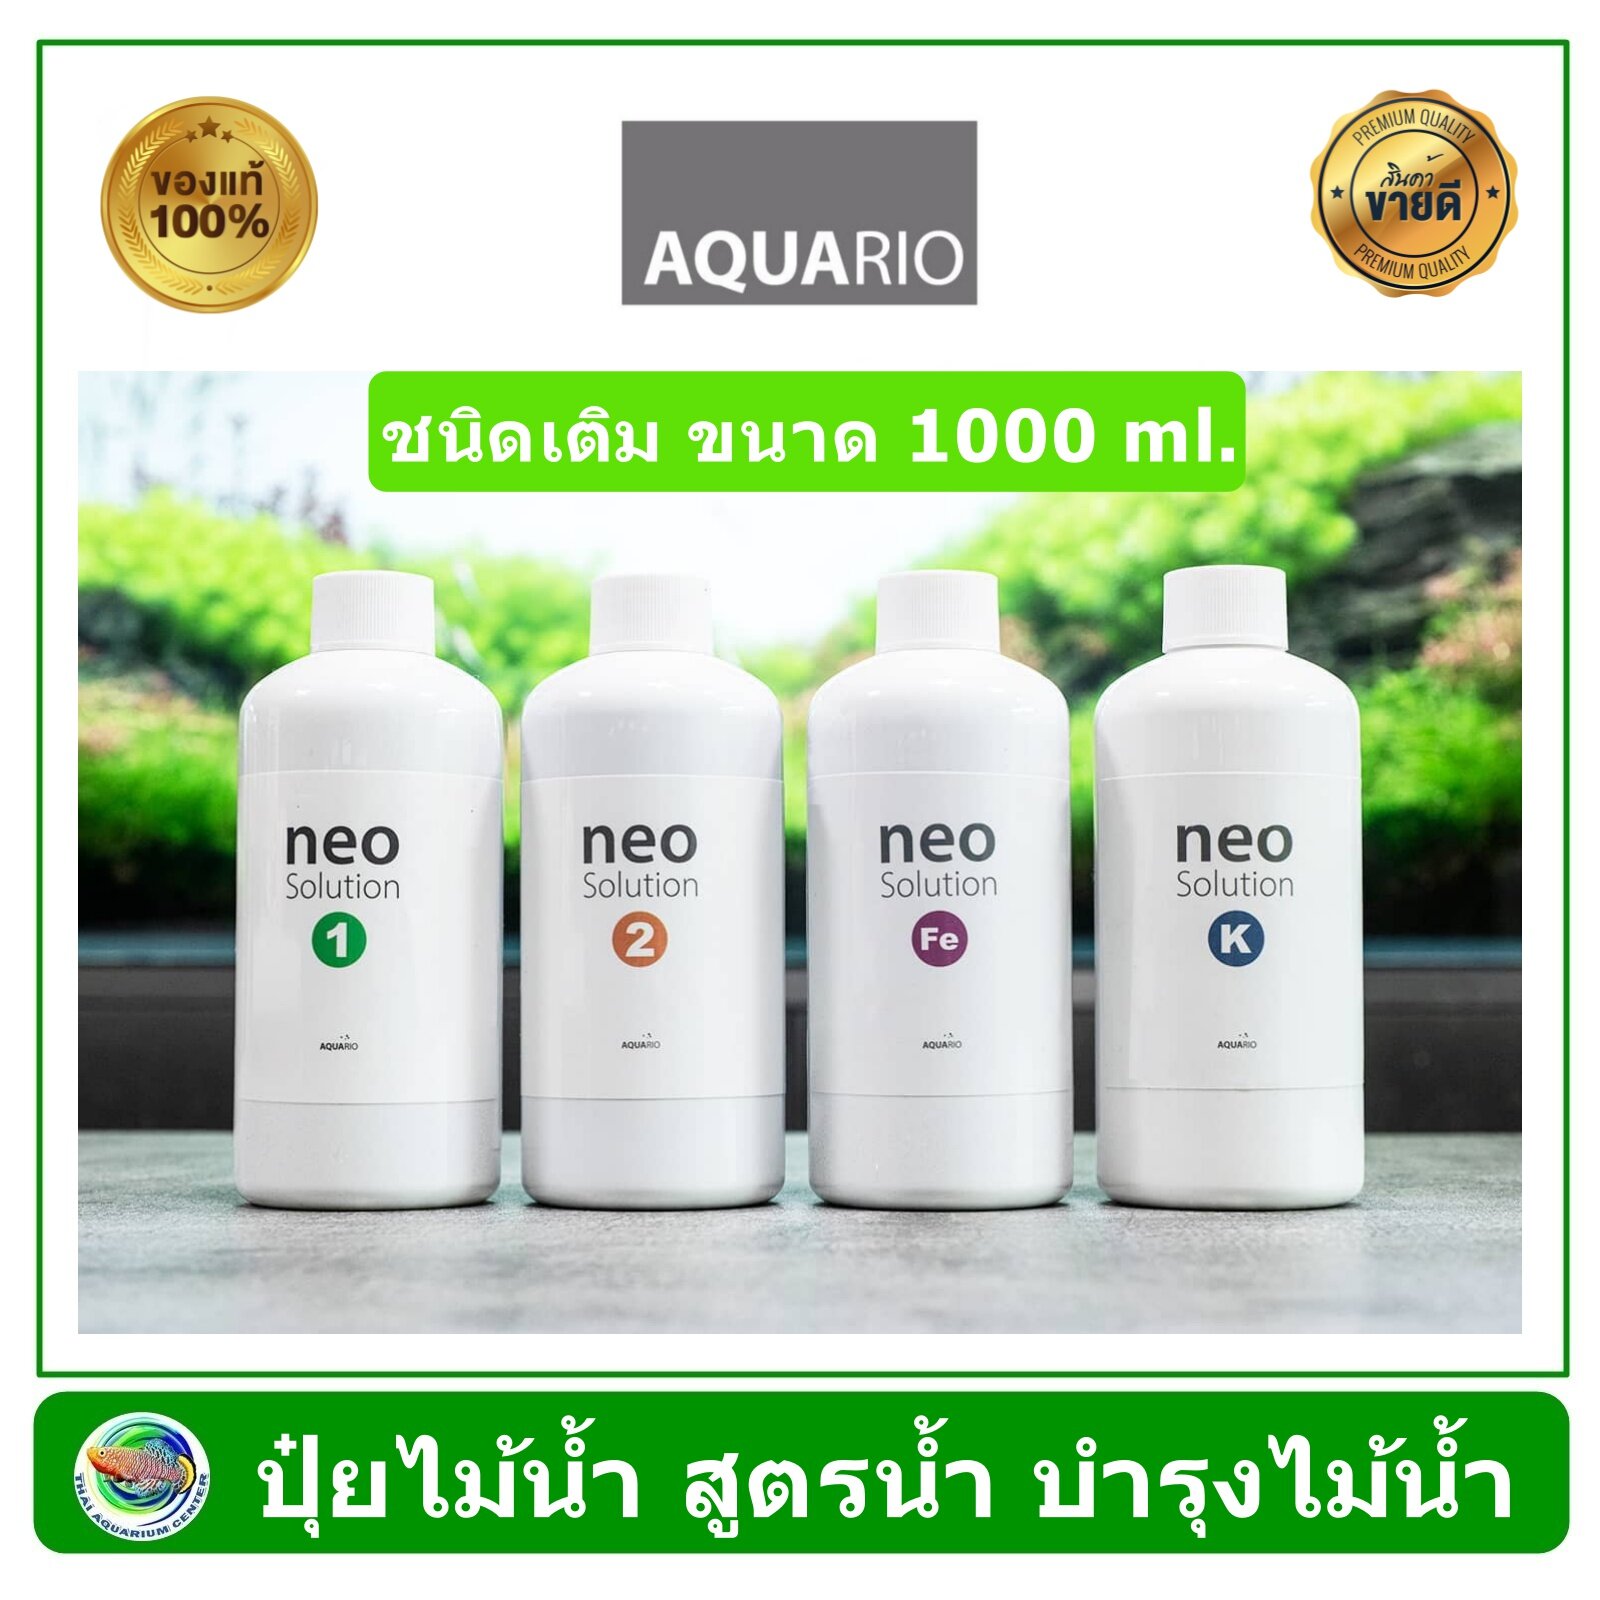 AQUARIO NEO SOLUTION ปุ๋ยน้ำ แร่ธาตุอาหาร สำหรับตู้ไม้น้ำ ขนาด 1000 ml ผลิตจากประเทศเกาหลี